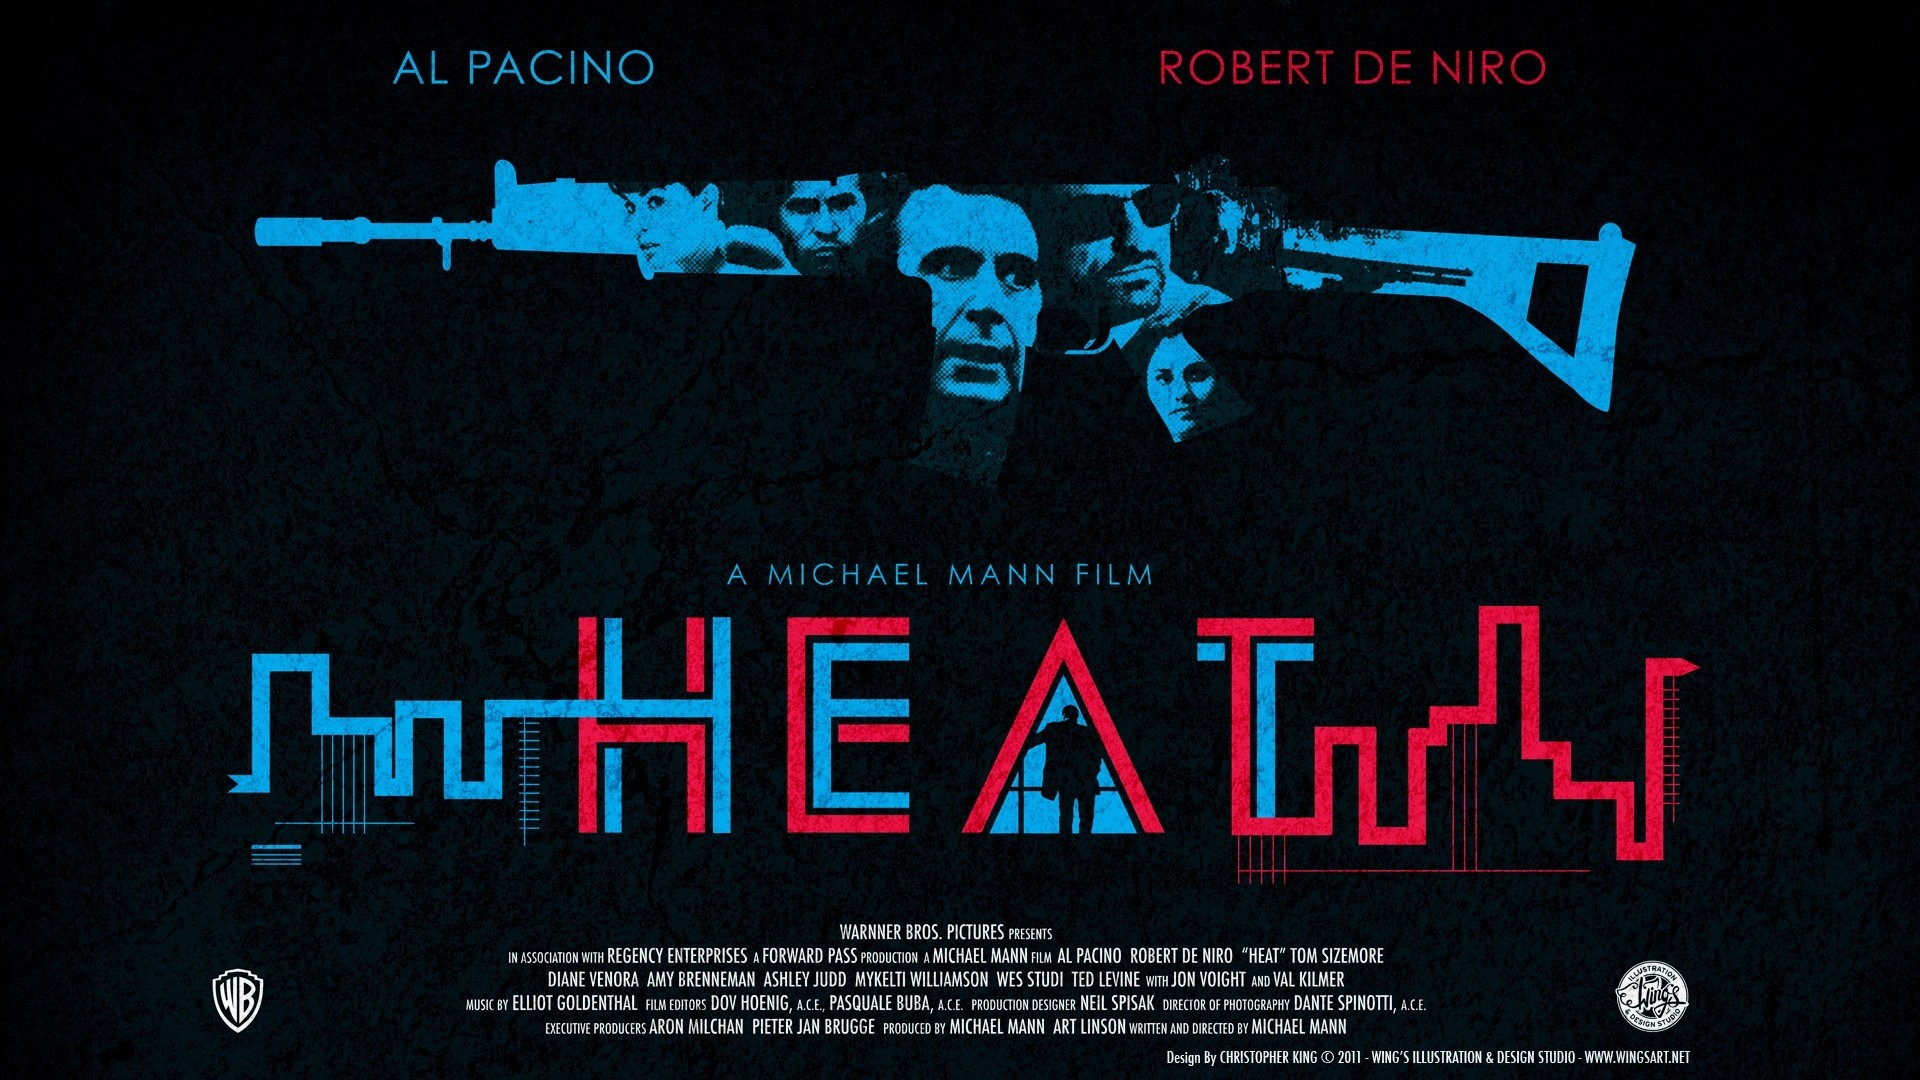 Al Pacino, Robert de Niro, Heat, Heat movie, Heat (movie) Wallpaper